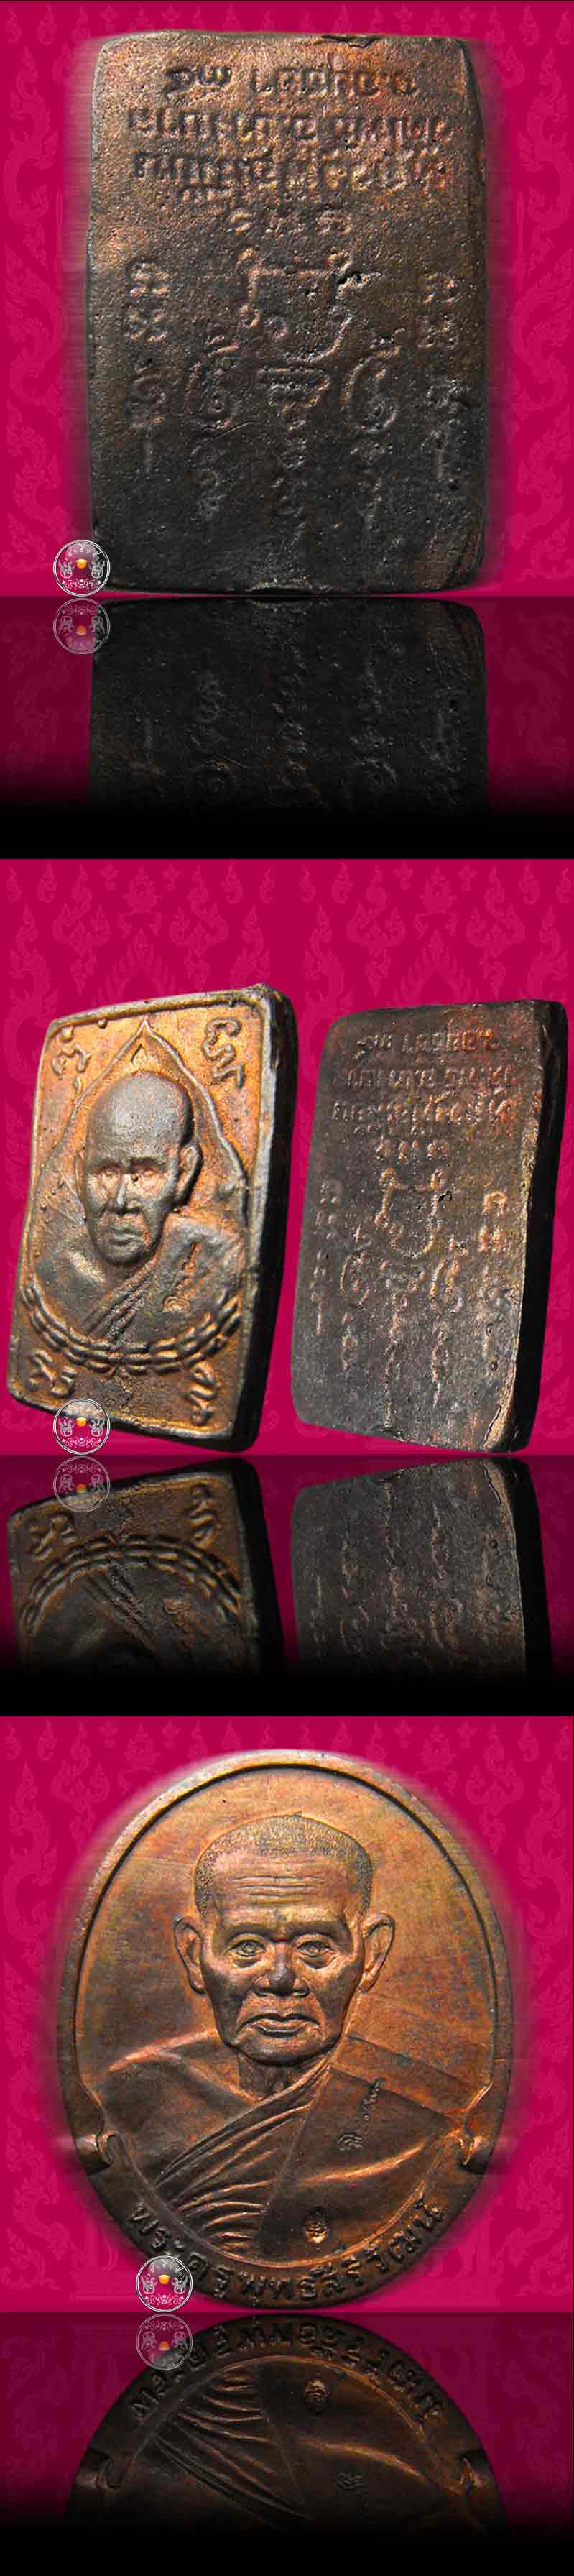 เหรียญนวะโลหะรุ่นแรก (ชนวนพระกริ่งสังฆราชแพฯ) หลวงพ่อเมี้ยน วัดโพธิ์กบเจา จ.อยุธยา ปี 2534 (ครบชุด) - 2